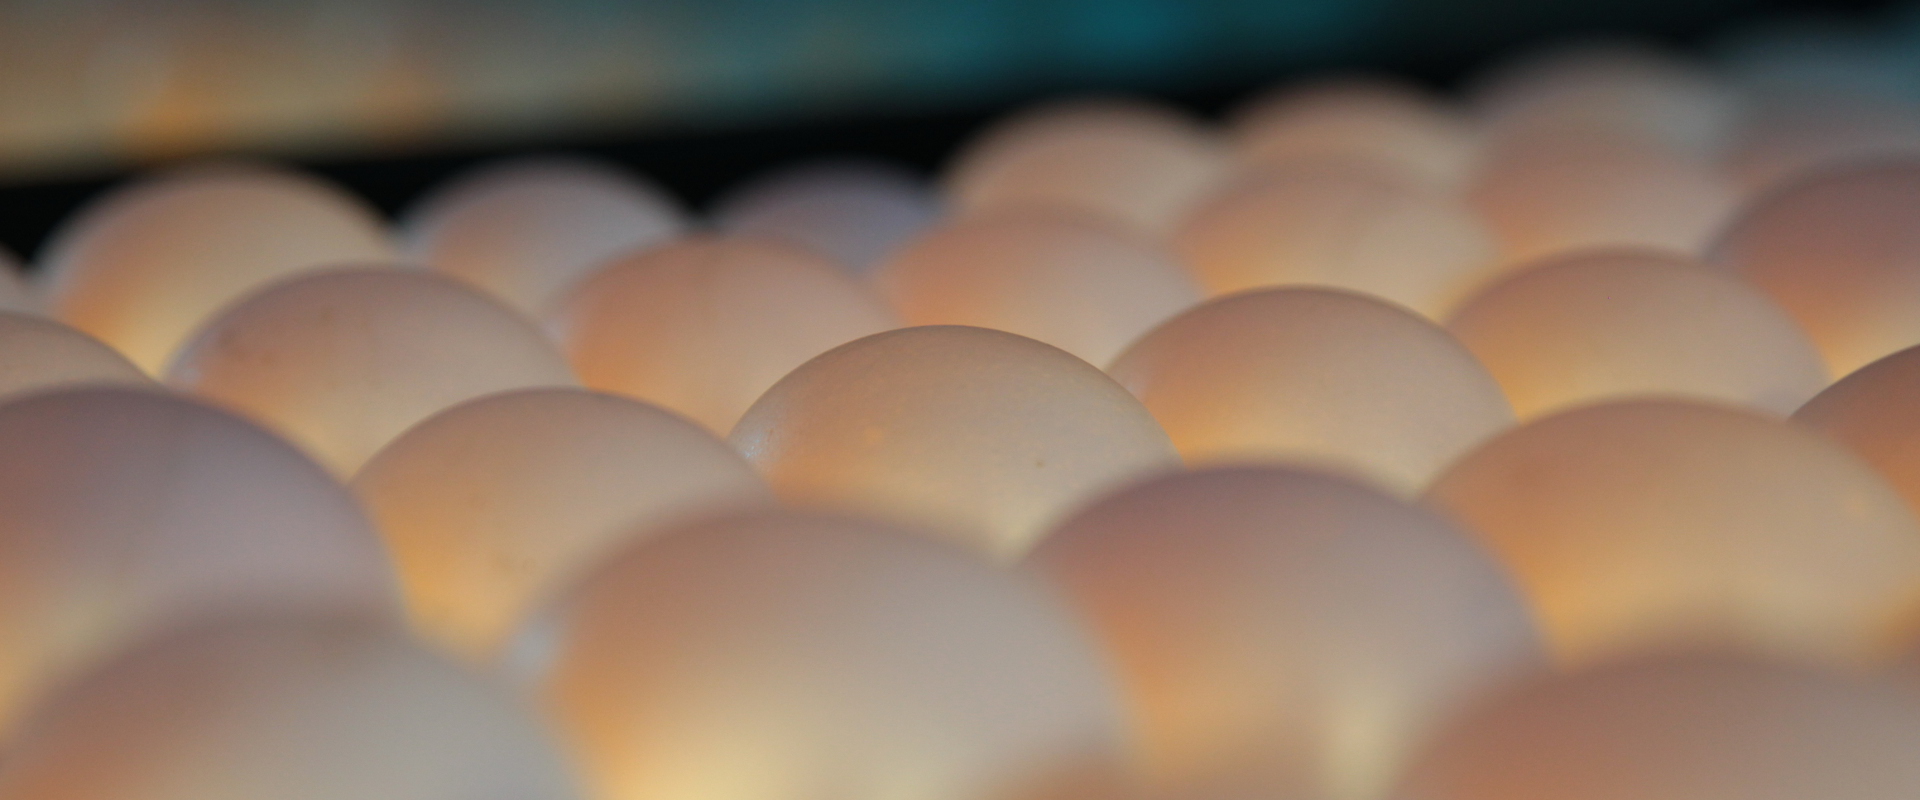 Foto: Eier werden in der Sortierung durchleuchtet